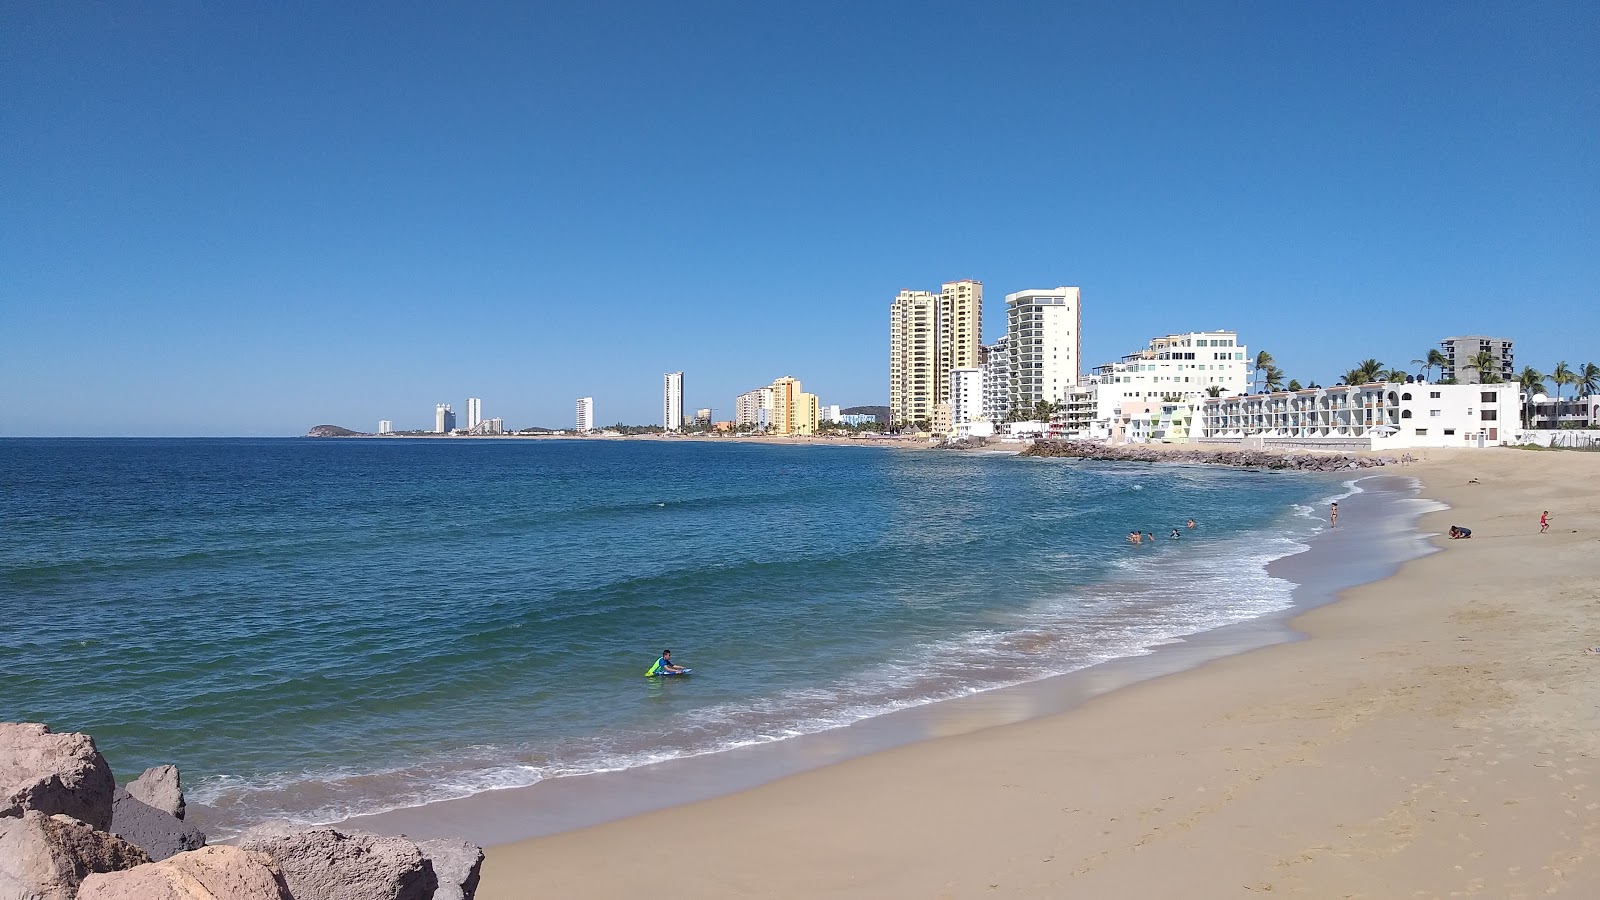 Zdjęcie Cerritos beach z powierzchnią jasny, drobny piasek